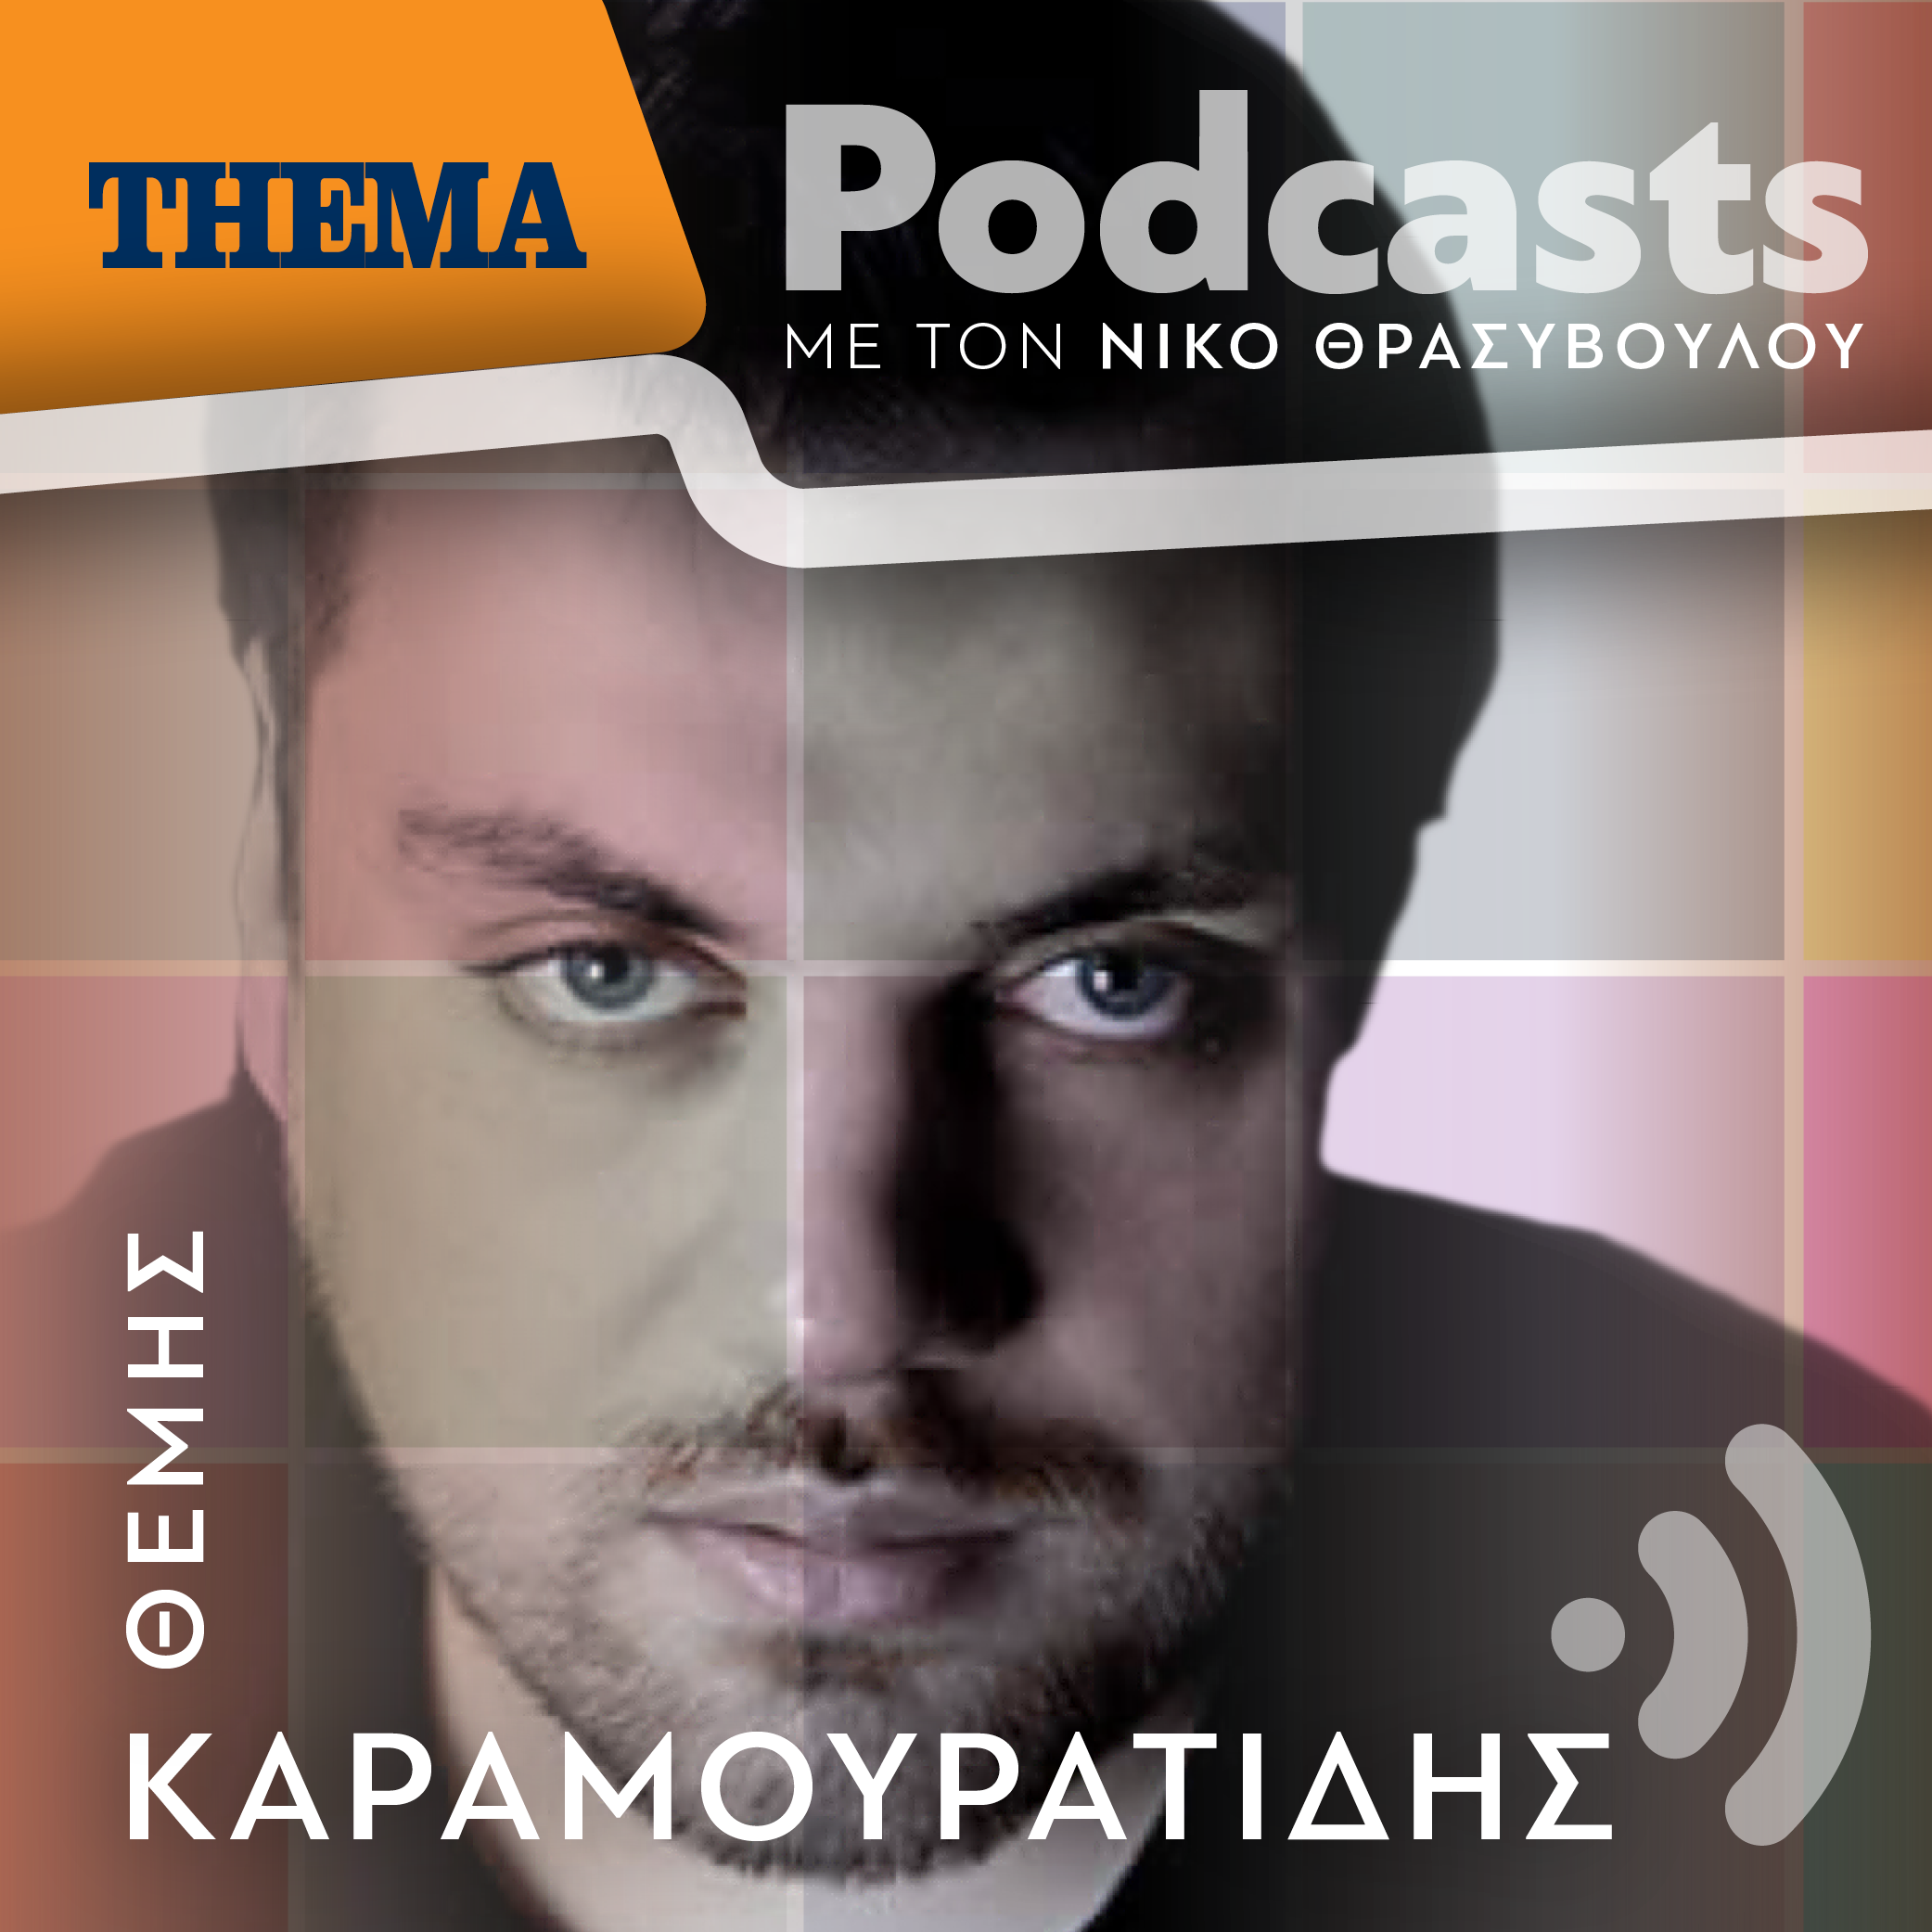 Θέμης Καραμουρατίδης: «Με γοητεύει η συνθήκη να γράφω μουσική για εικόνα και αναπαράσταση»